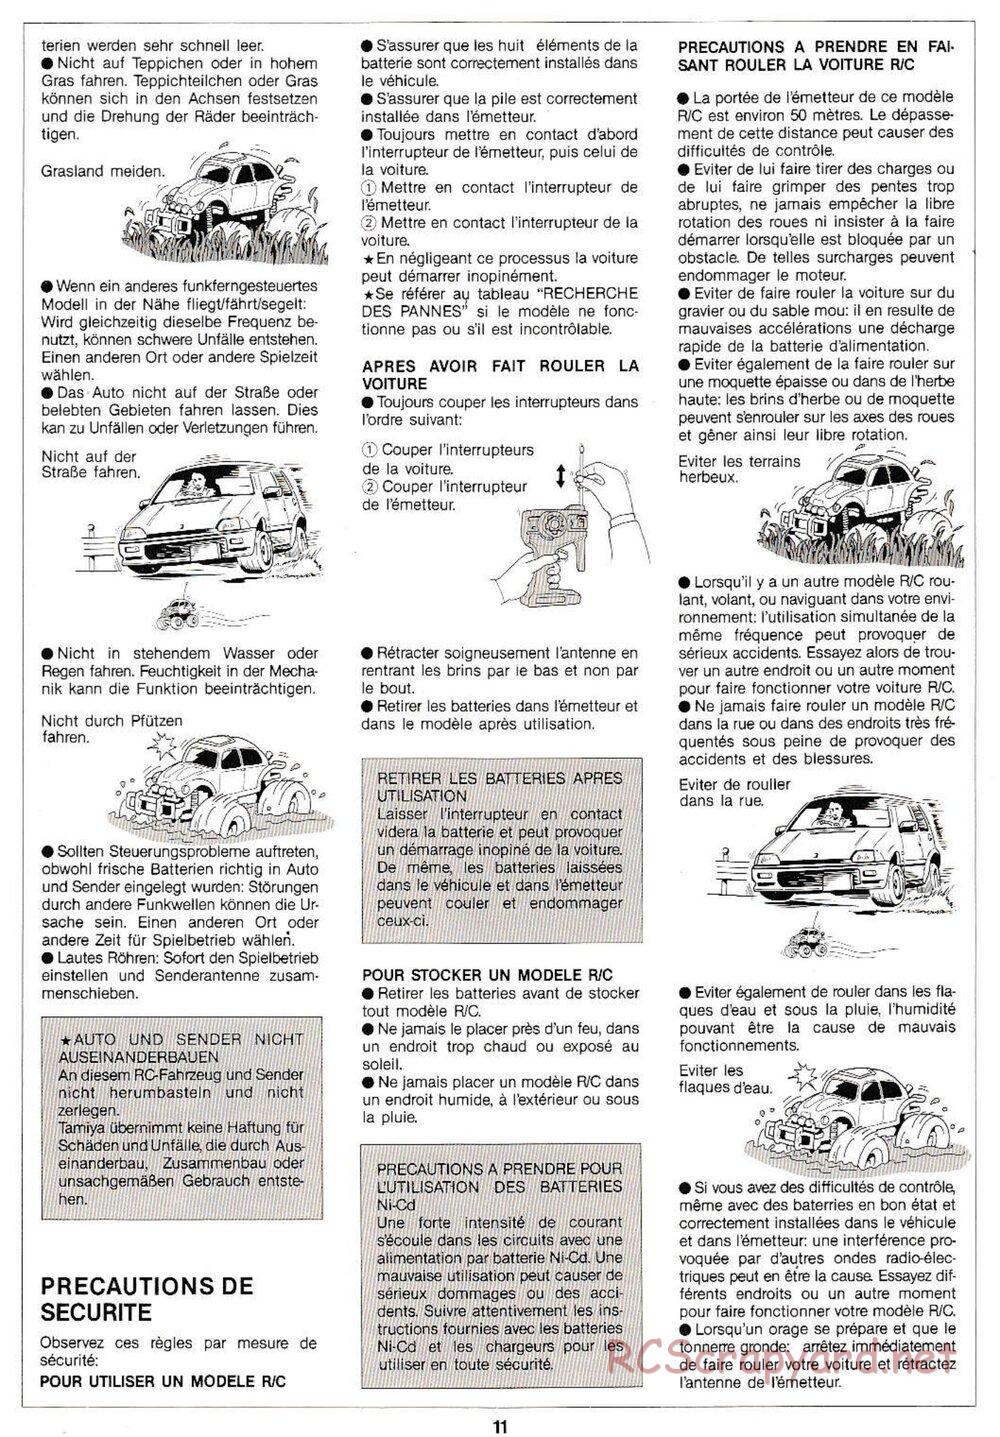 Tamiya - Monster Beetle QD Chassis - Manual - Page 11